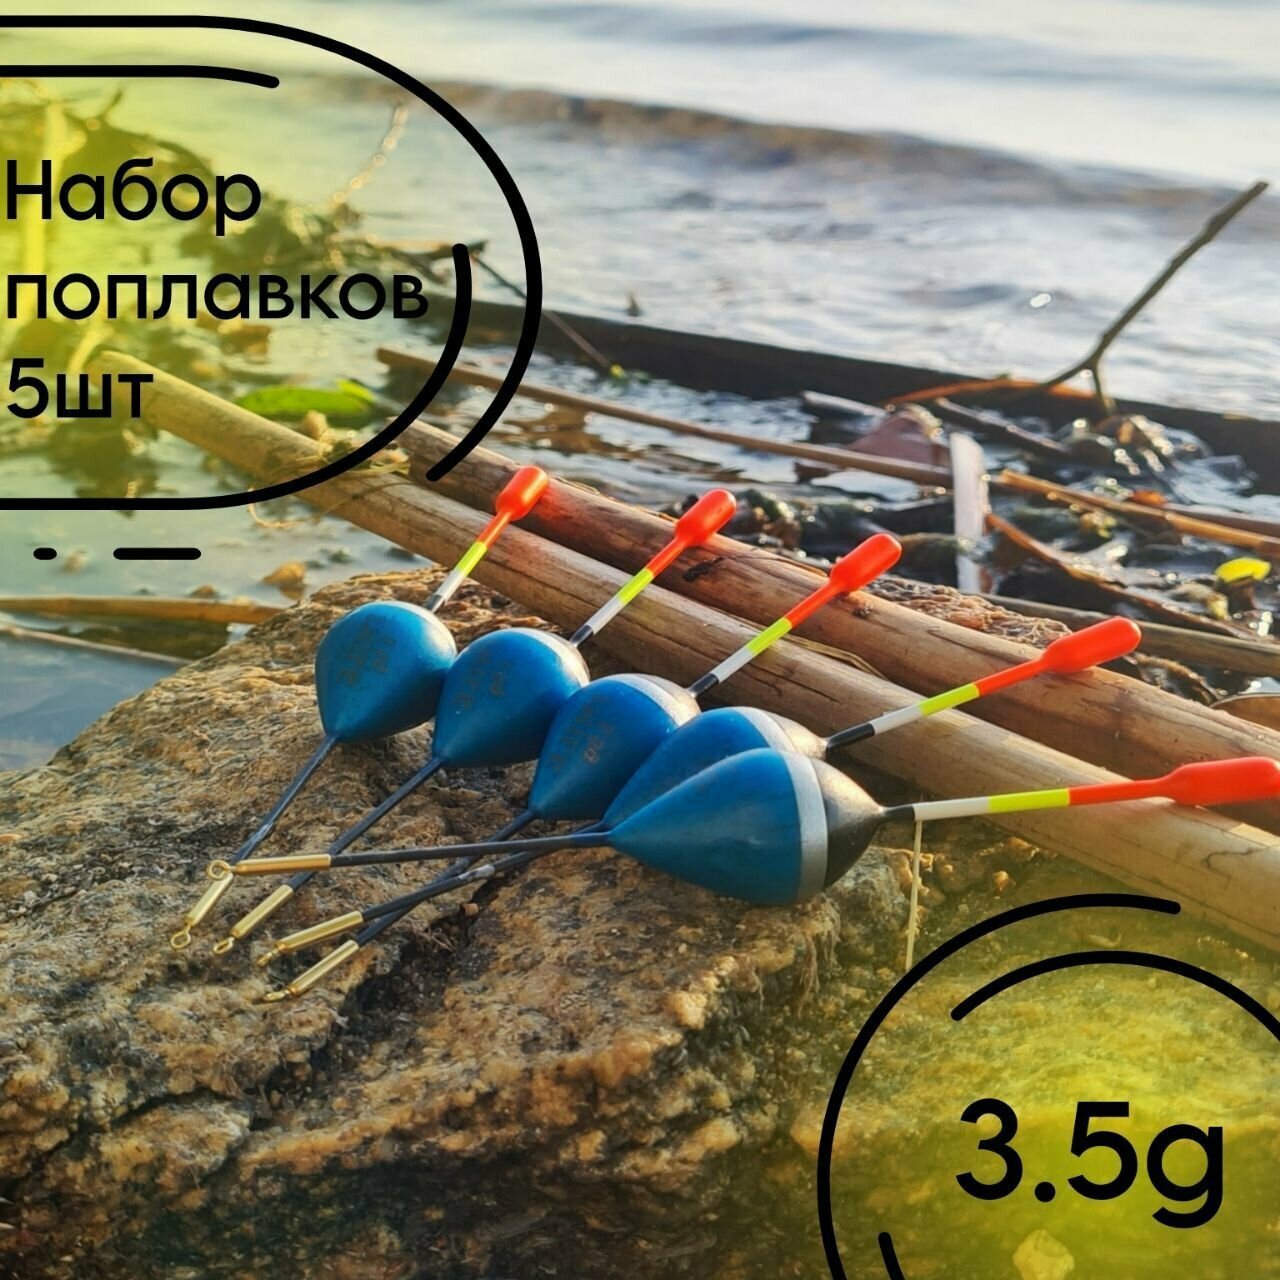 Поплавок для рыбалки из бальсы высота 13.5 см, 3.5 гр, для летней рыбалки 5 штук.